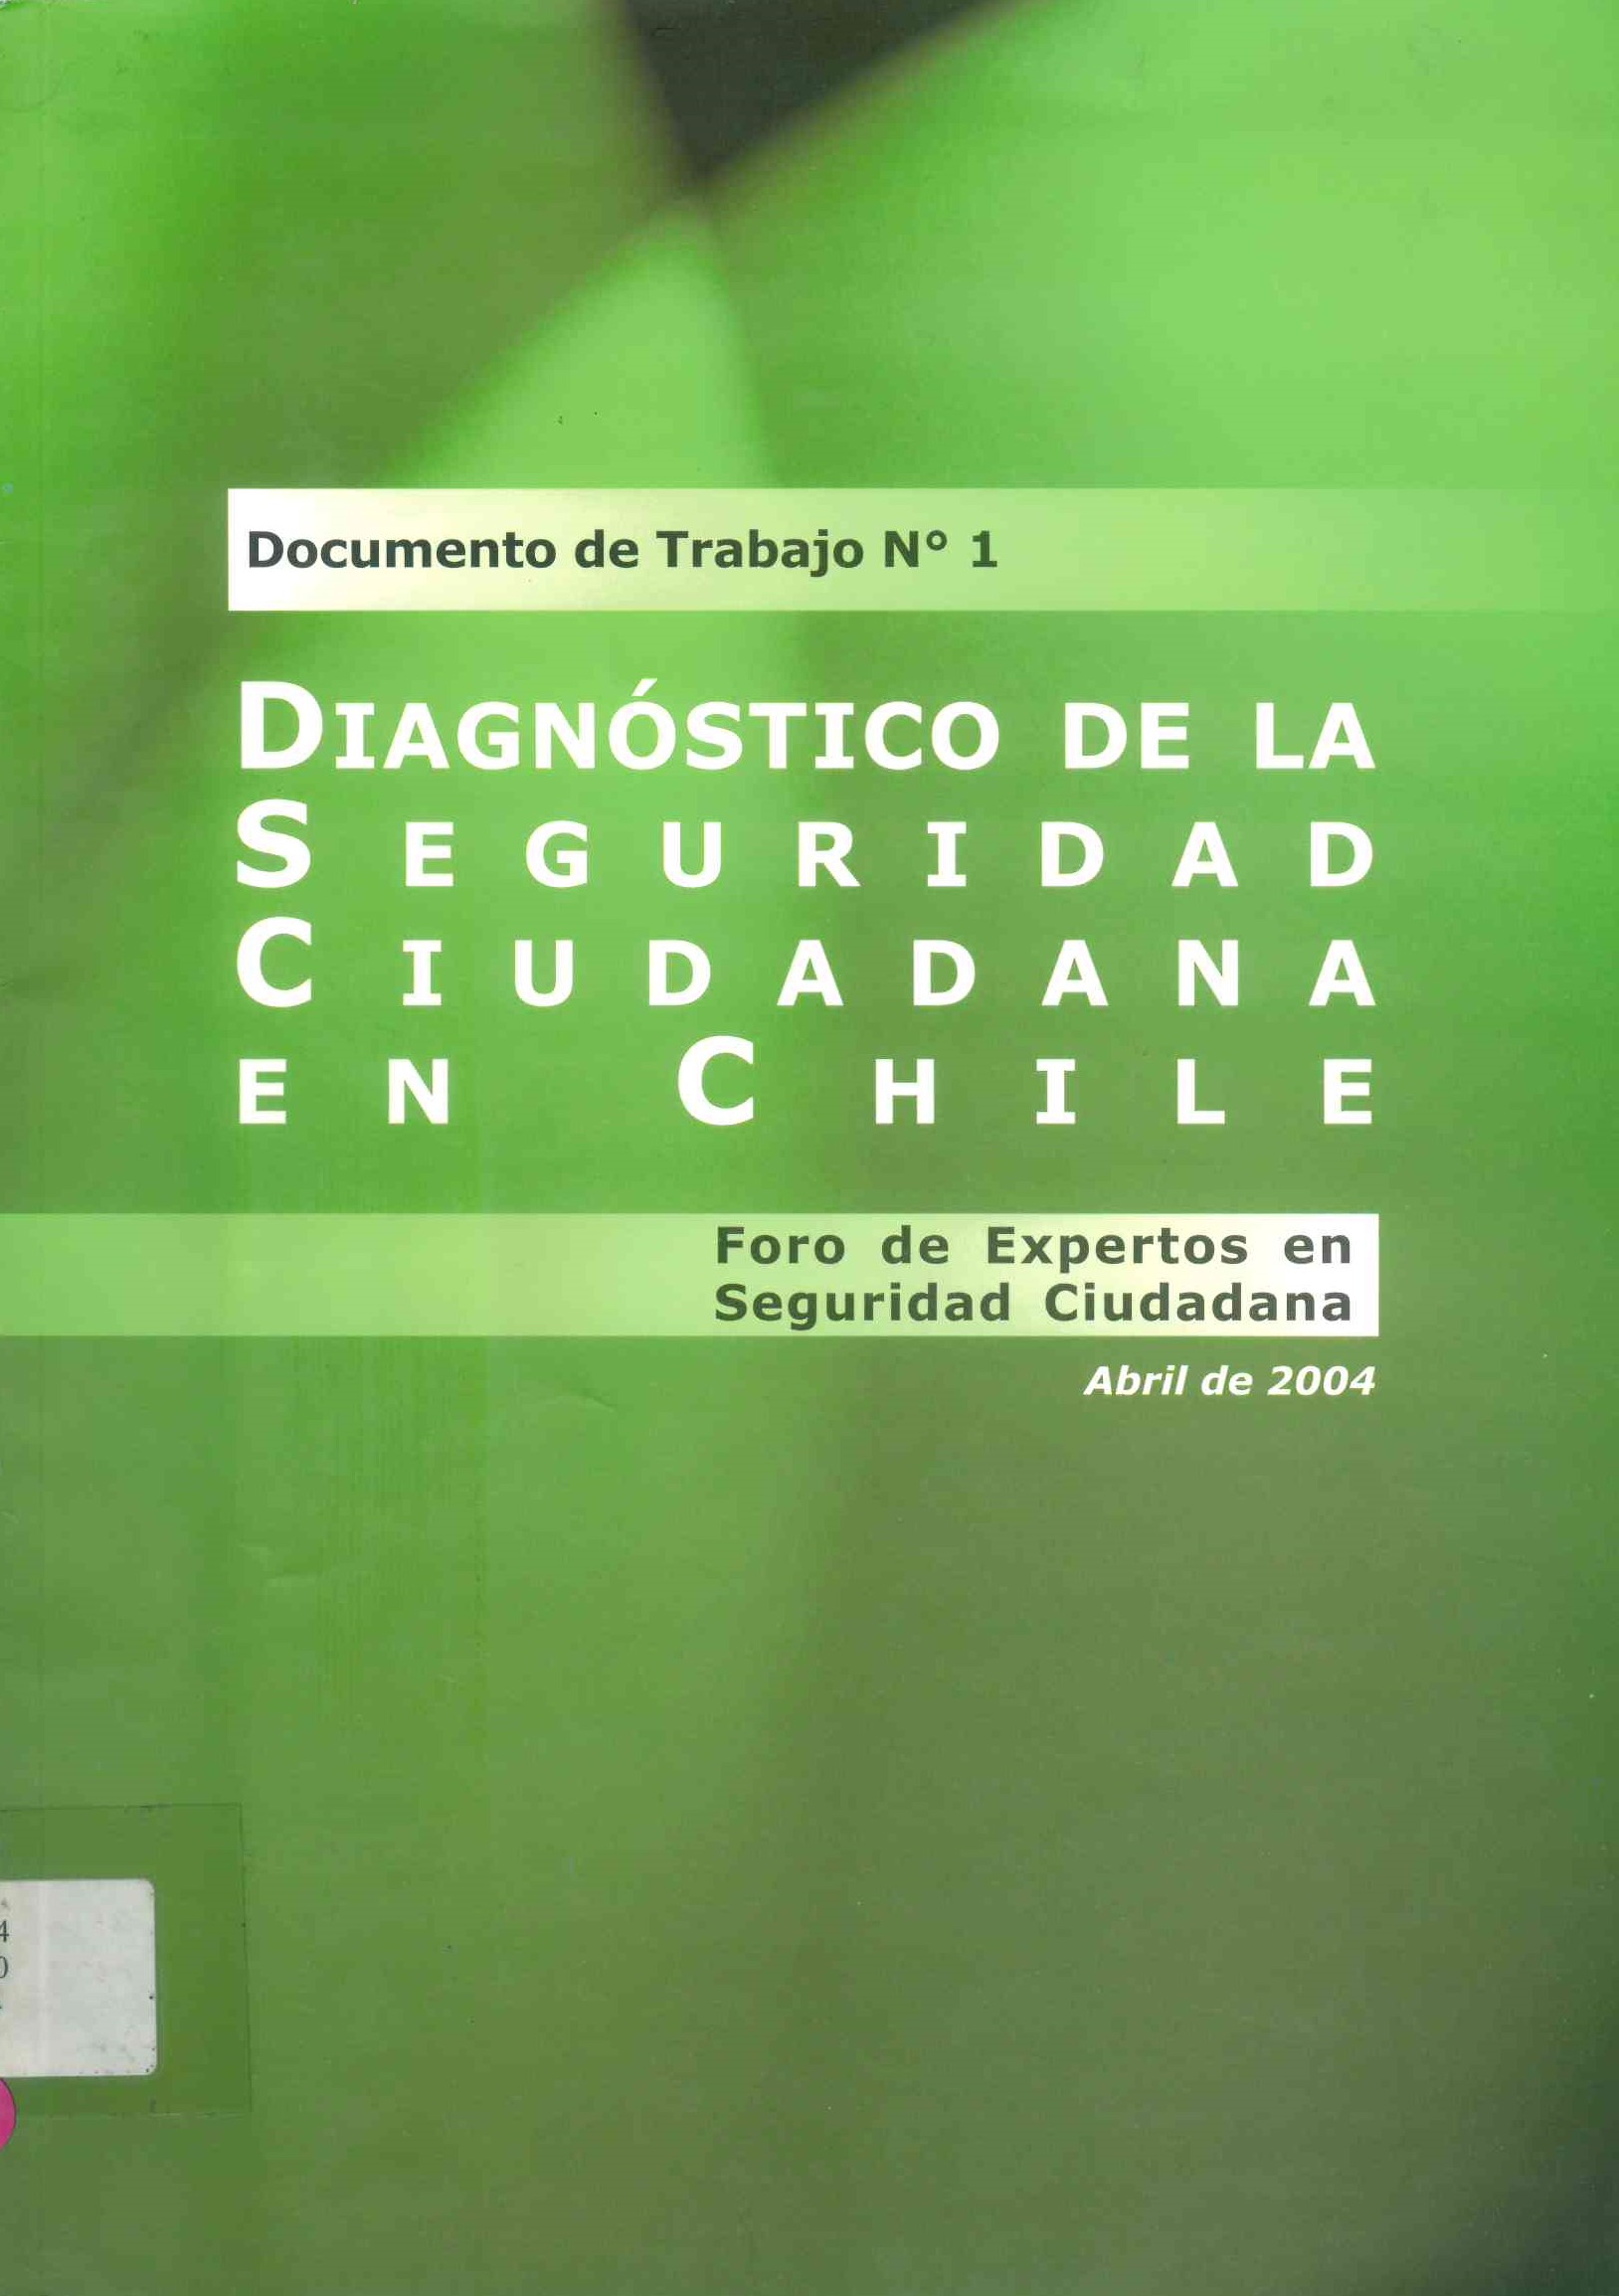 Diagnóstico de la seguridad ciudadana en chile : foro de expertos en seguridad ciudadana. Abril, 2004